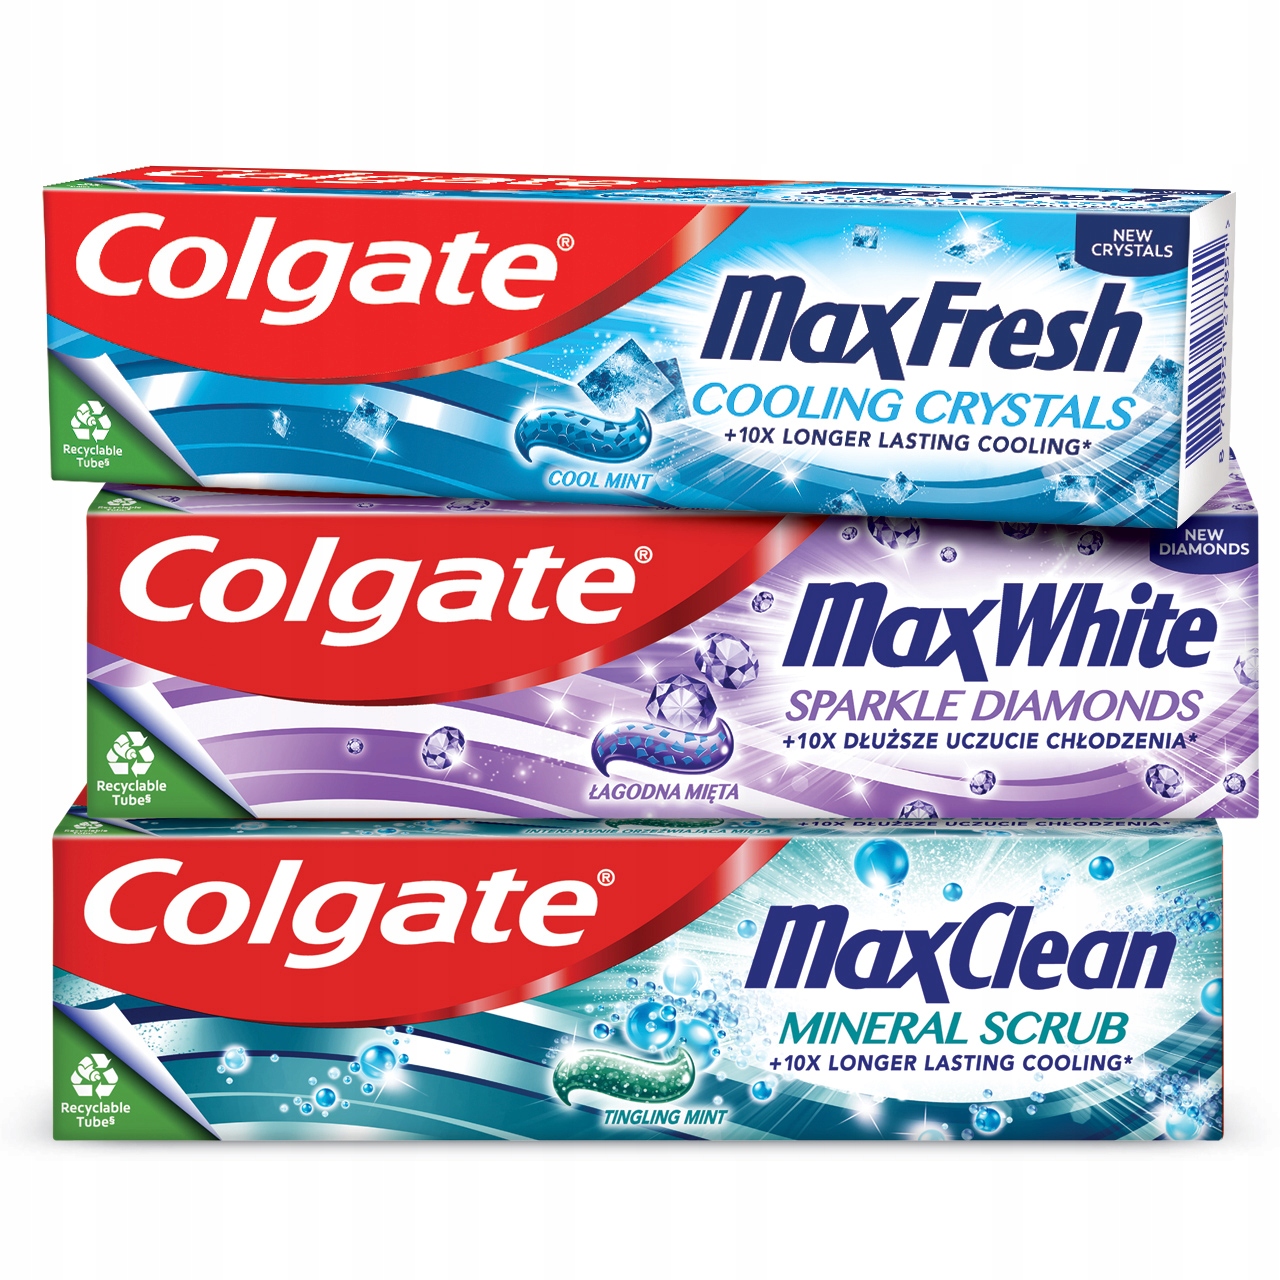 COLGATE ŚWIEŻOŚĆ NA MAXA 3x pasta do zębów ZESTAW